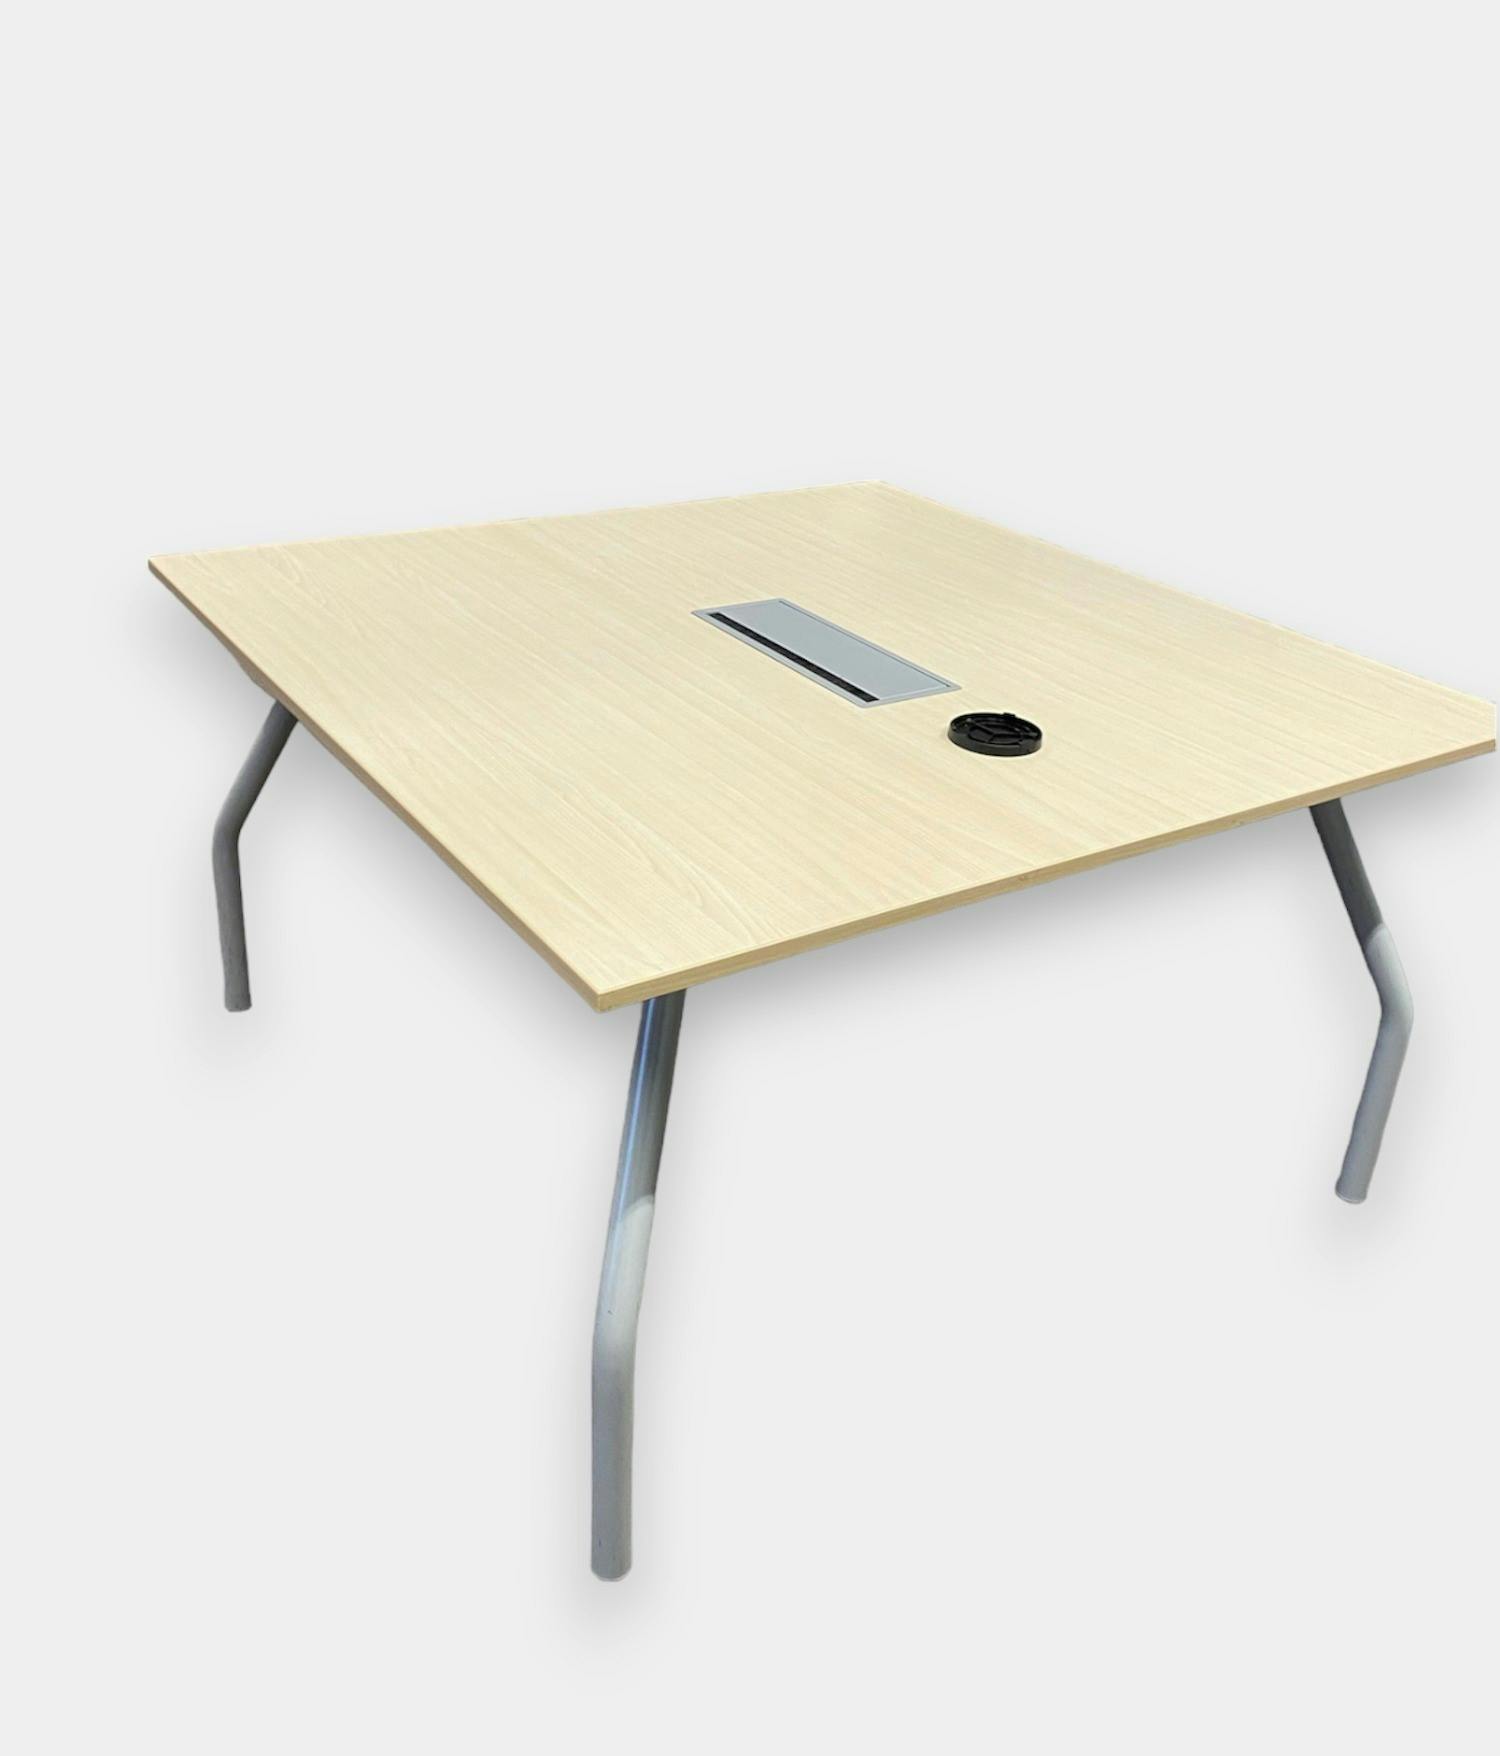 PAMI vierkante vergadertafel beige met ingebouwd kabelbeheersysteem 130cm - Relieve Furniture